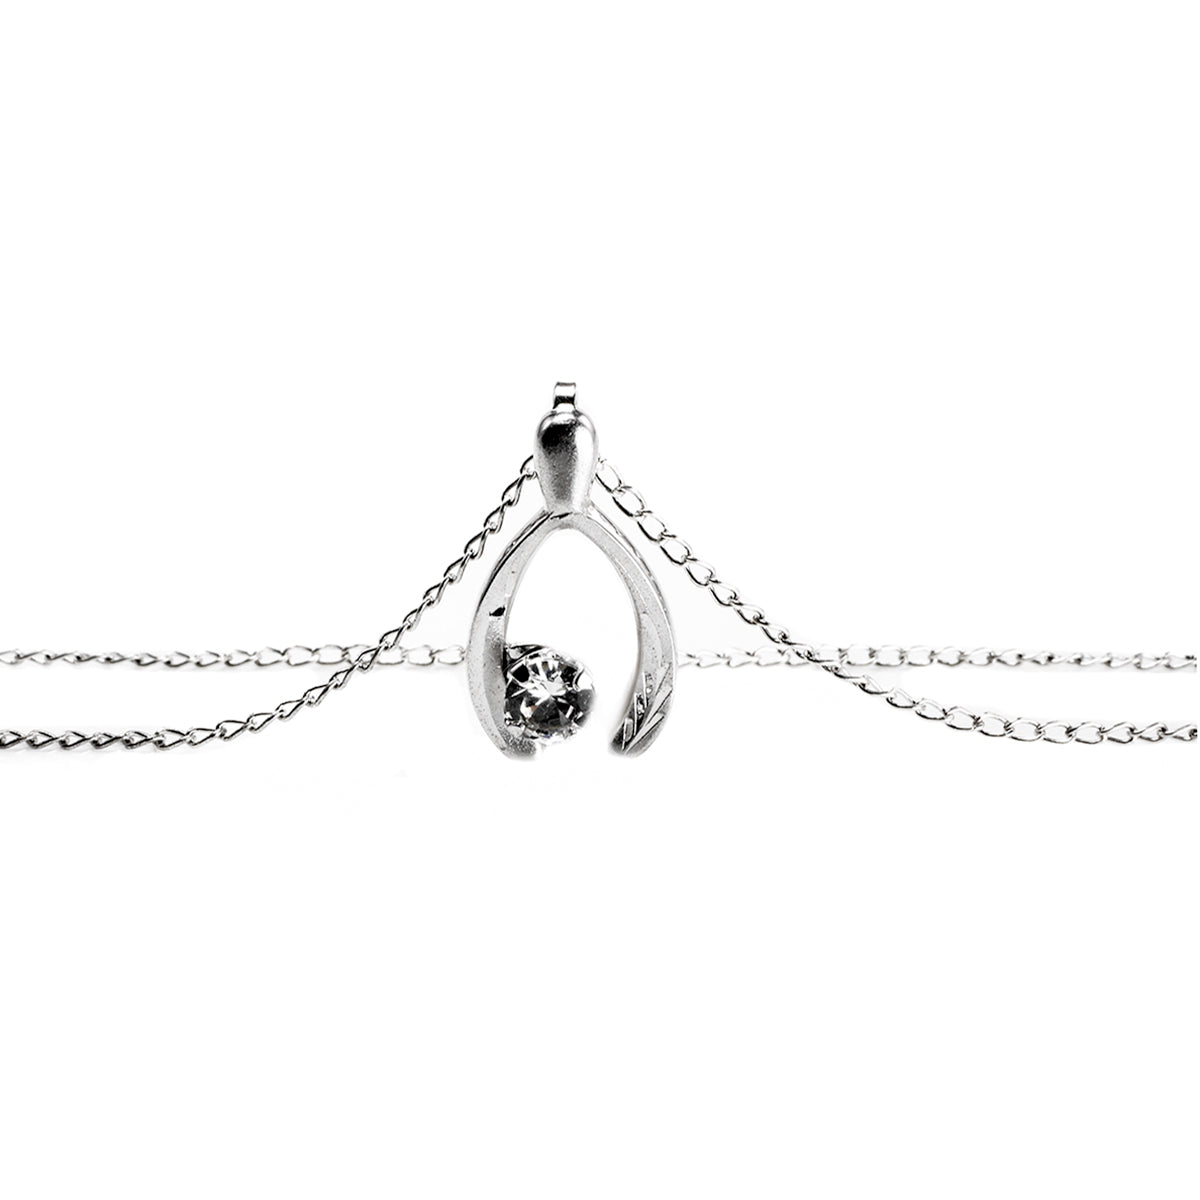 White Gold Wishbone Necklace | Wishbone necklace, Wishbone necklace gold,  Necklace